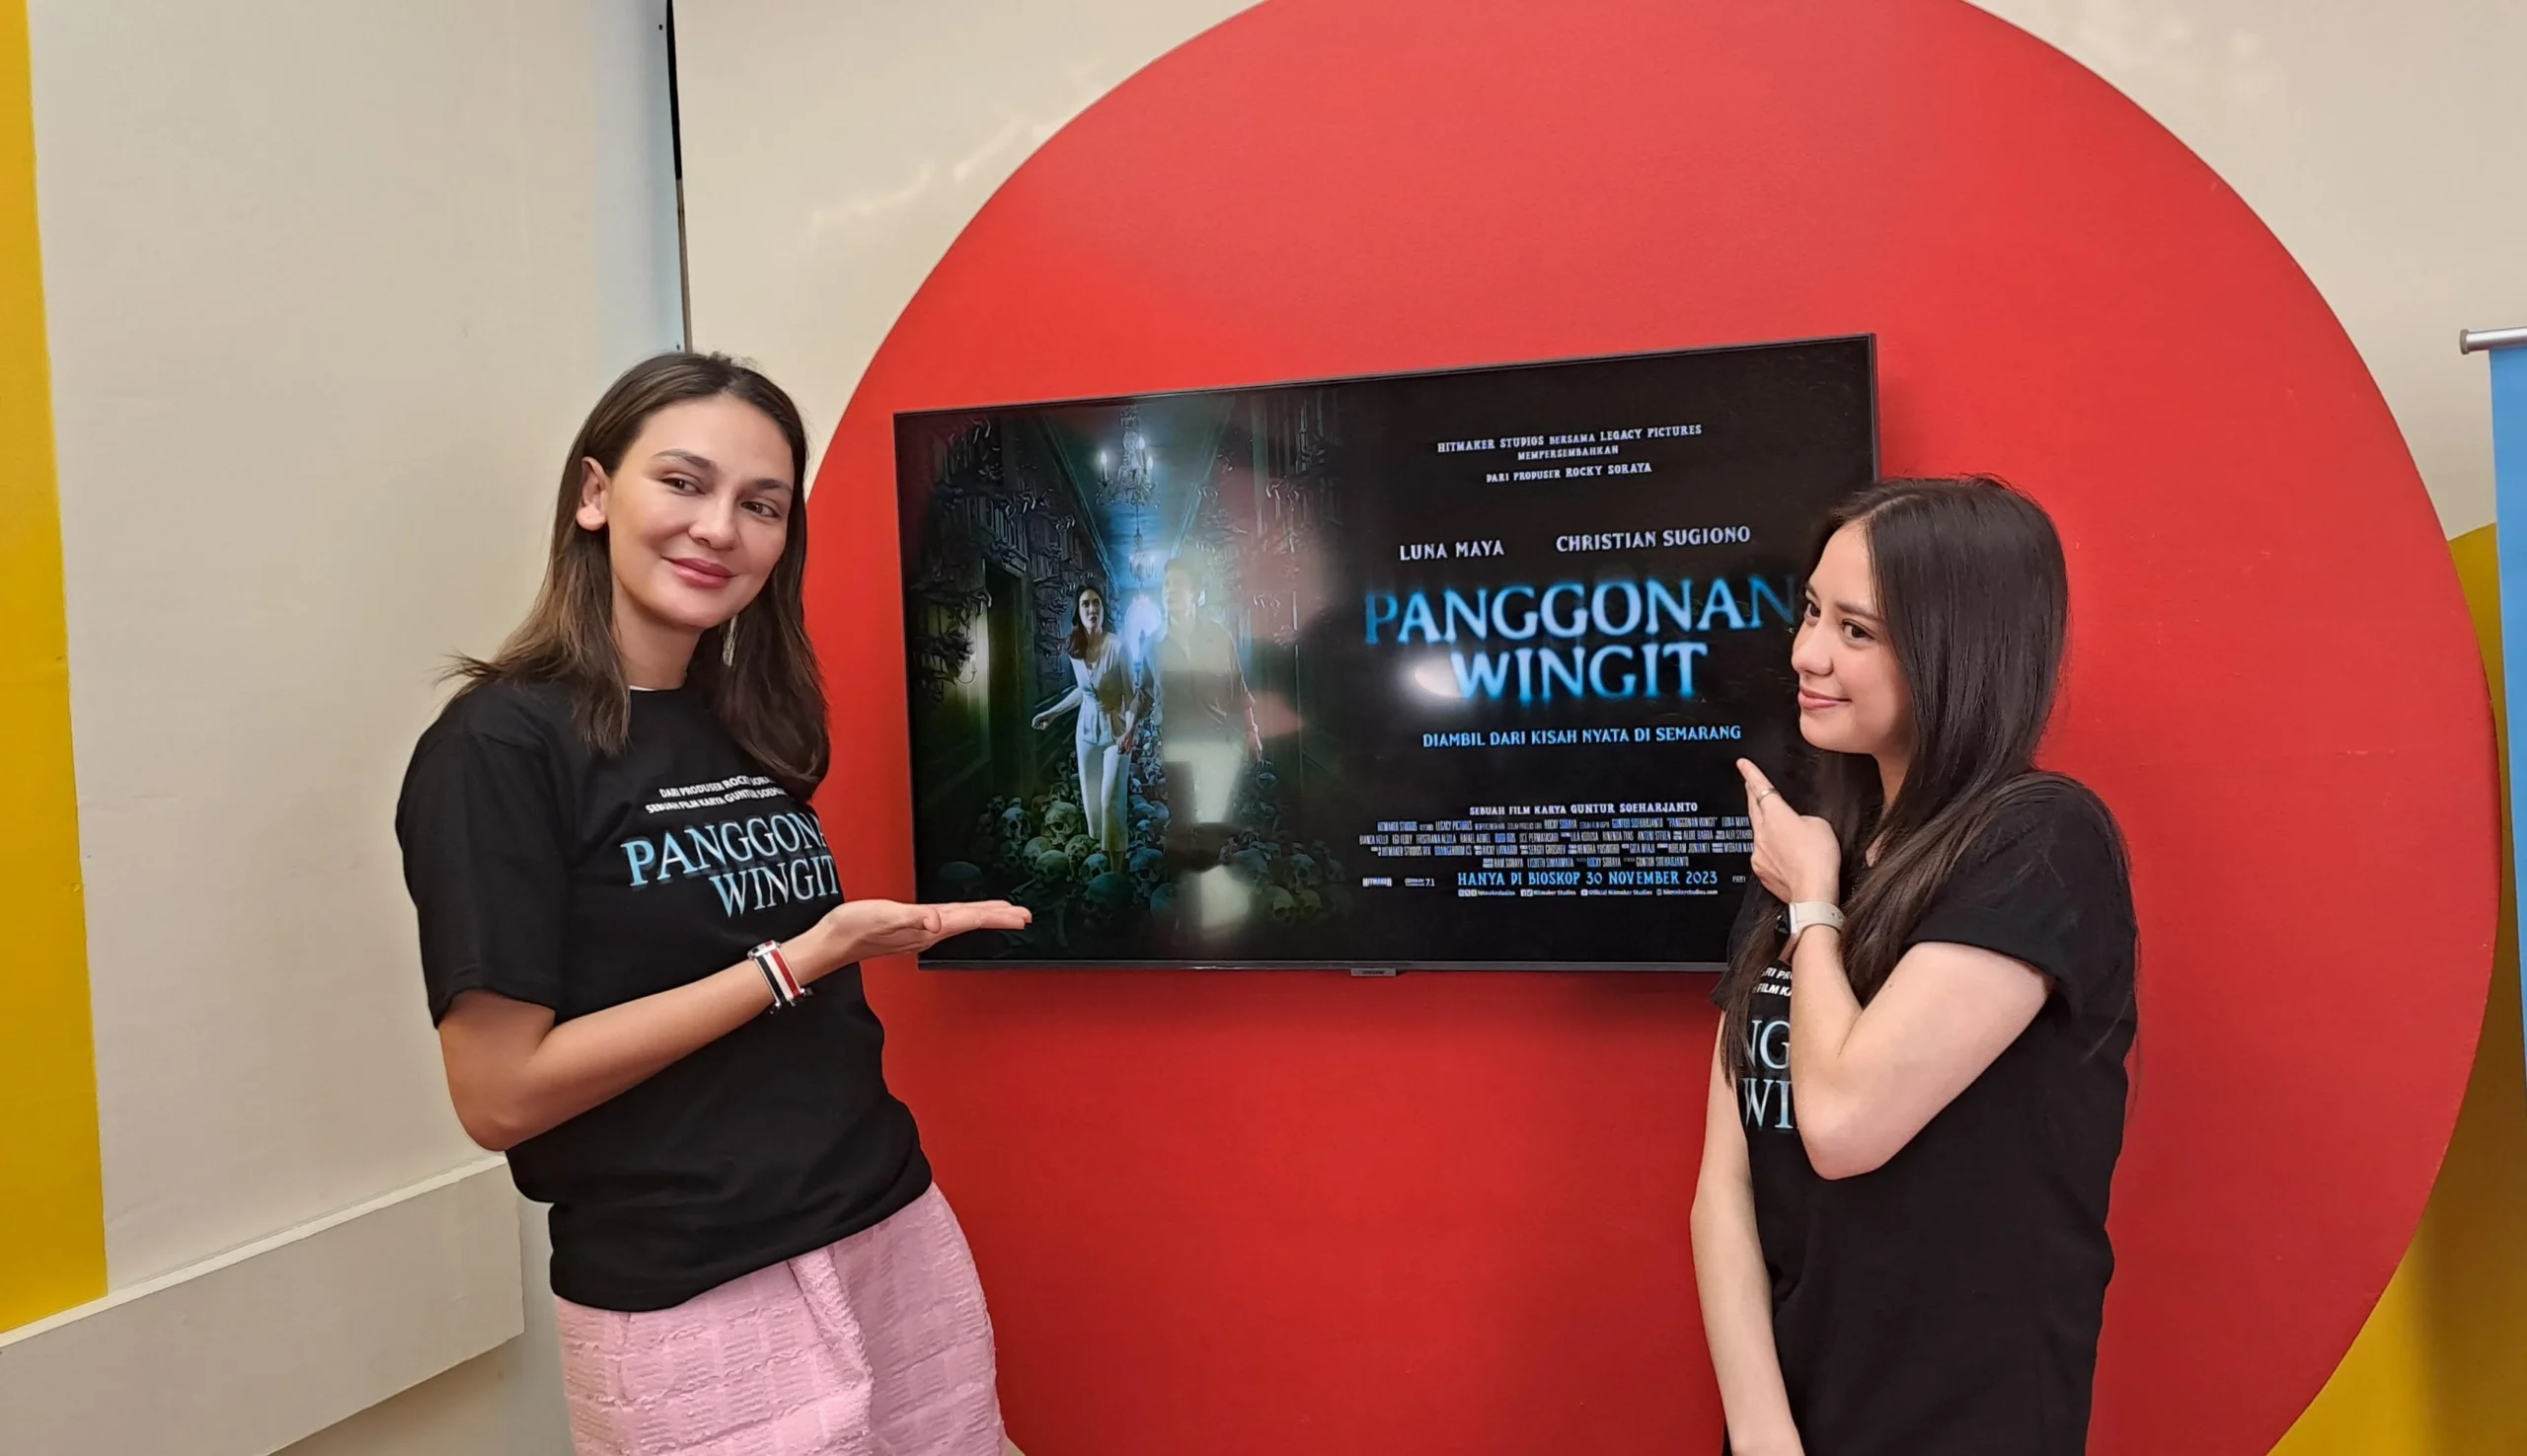 Film Horor "Panggonan Wingit" yang Dibintangi Luna Maya, Akan Segera Tayang, Catat Tanggalnya!